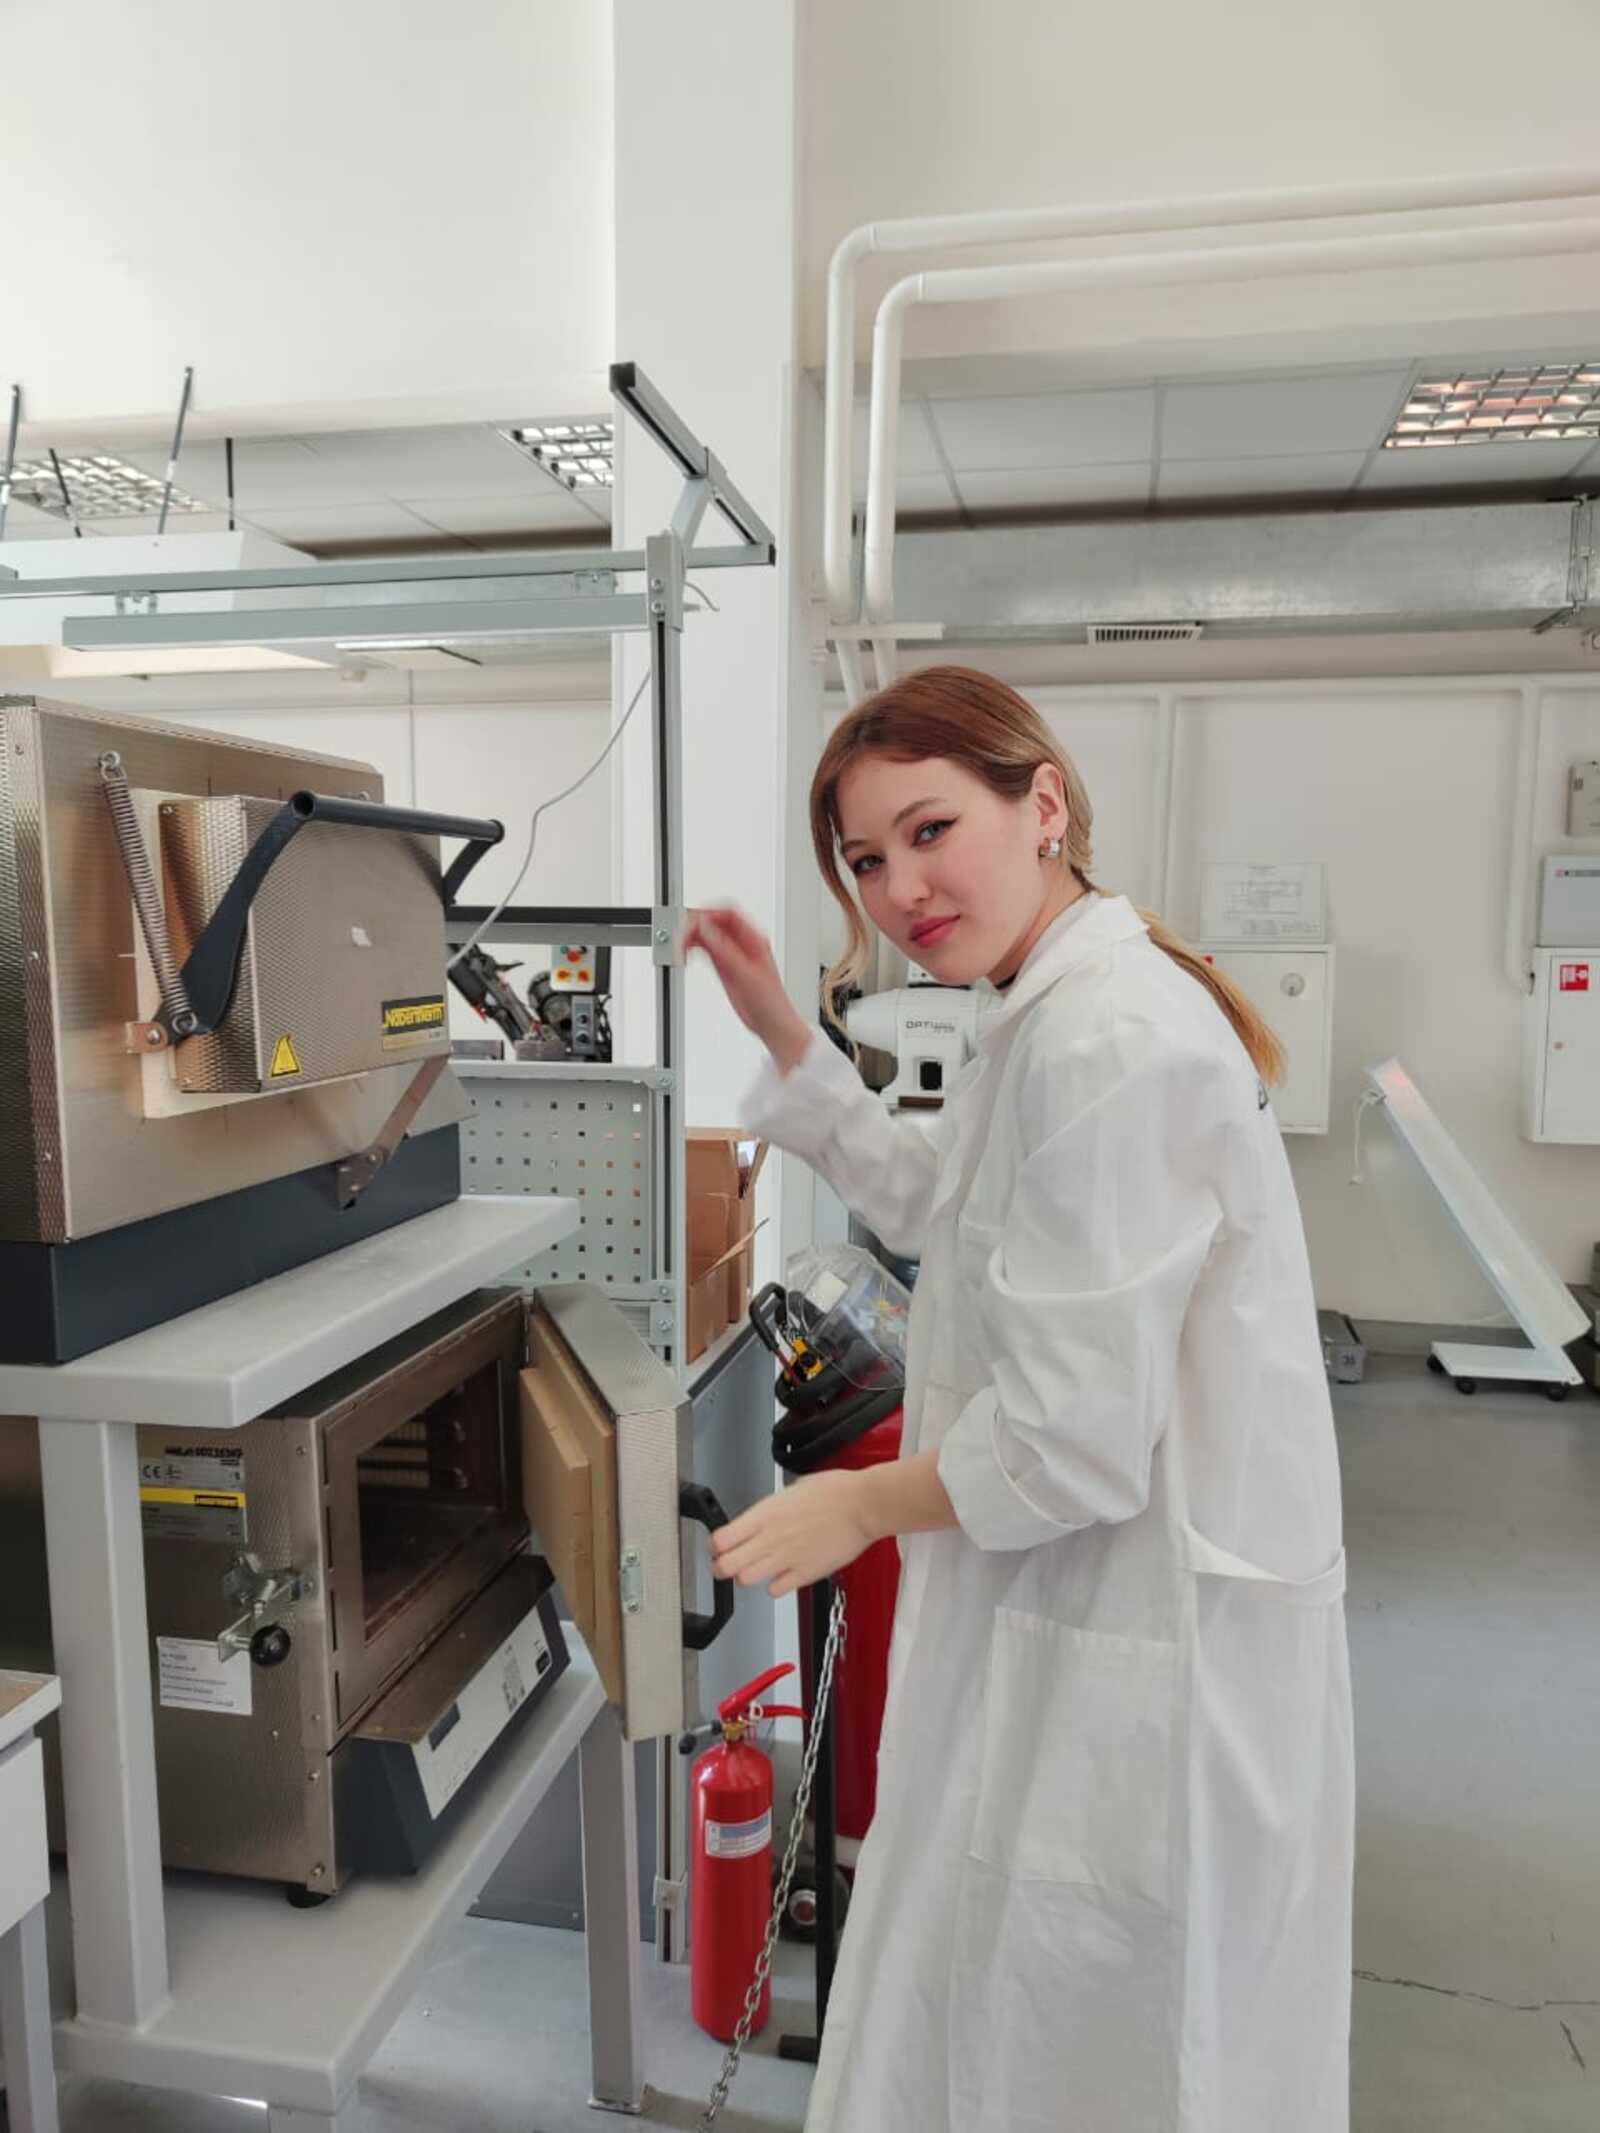 Молодой ученый Уфимского университета создает биорастворимые «имплантаты будущего»